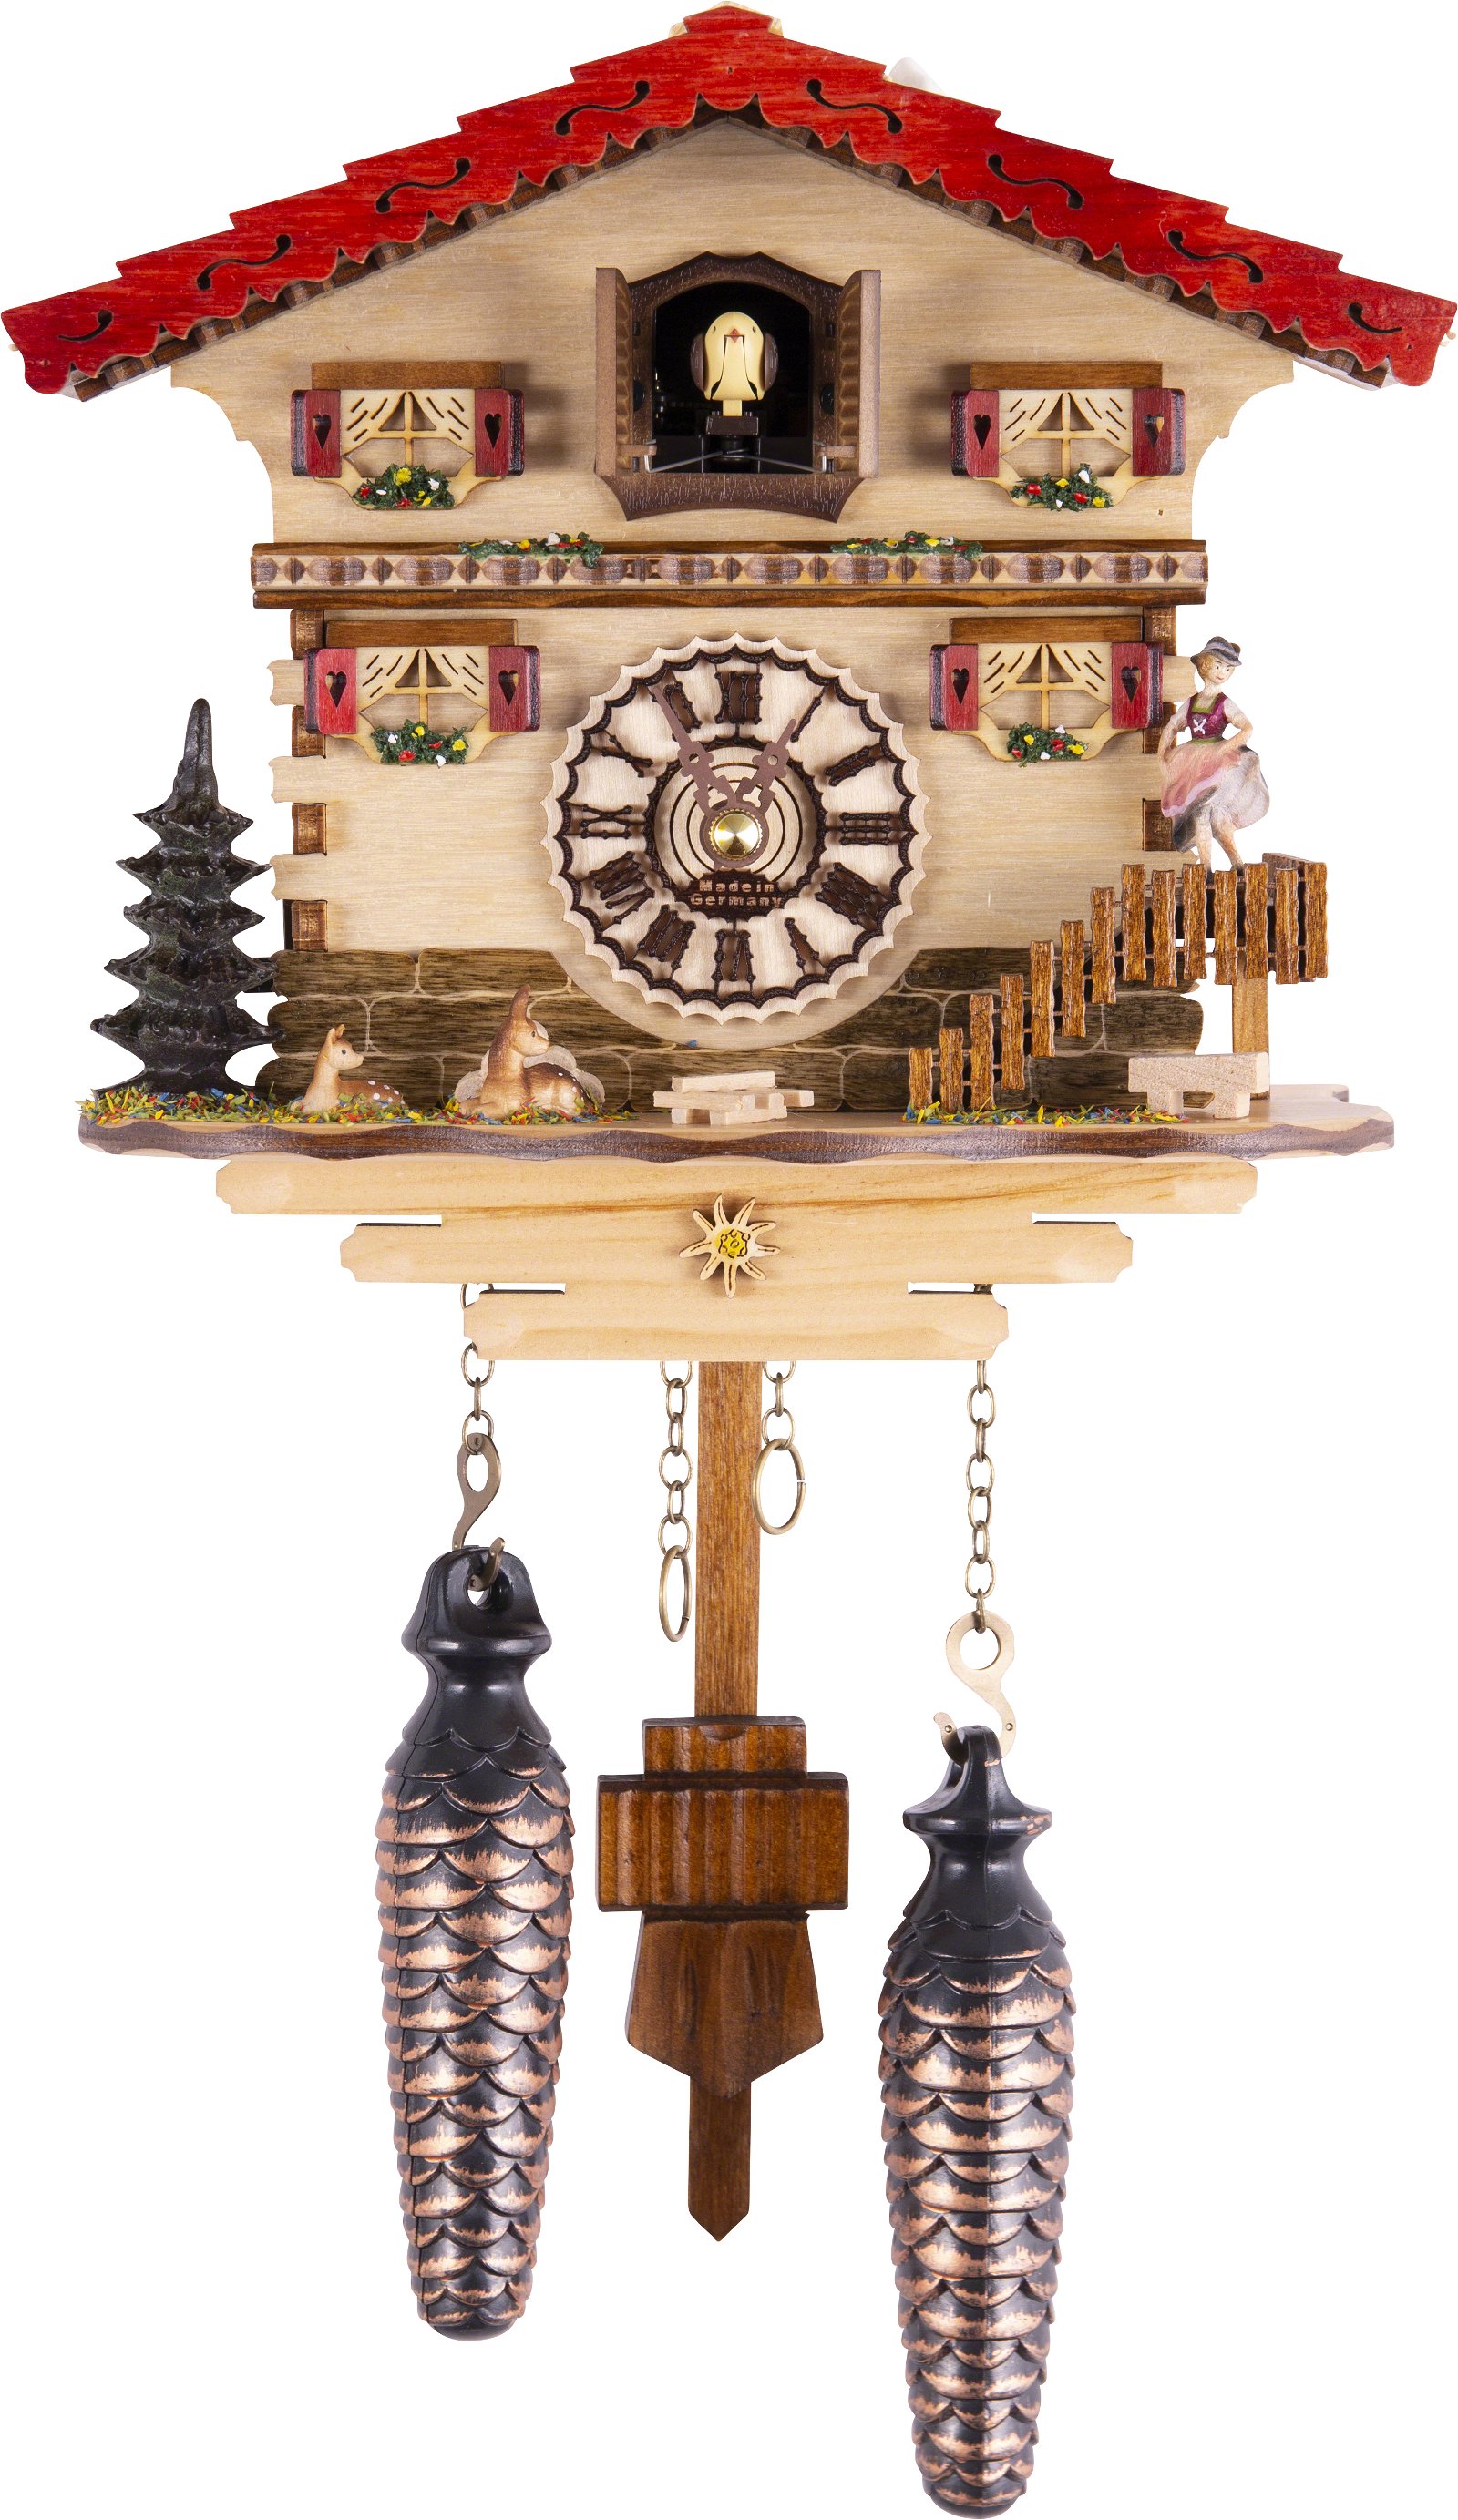 Kuckucksuhr Quarz-Uhrwerk Chalet-Stil 20cm von Trenkle Uhren